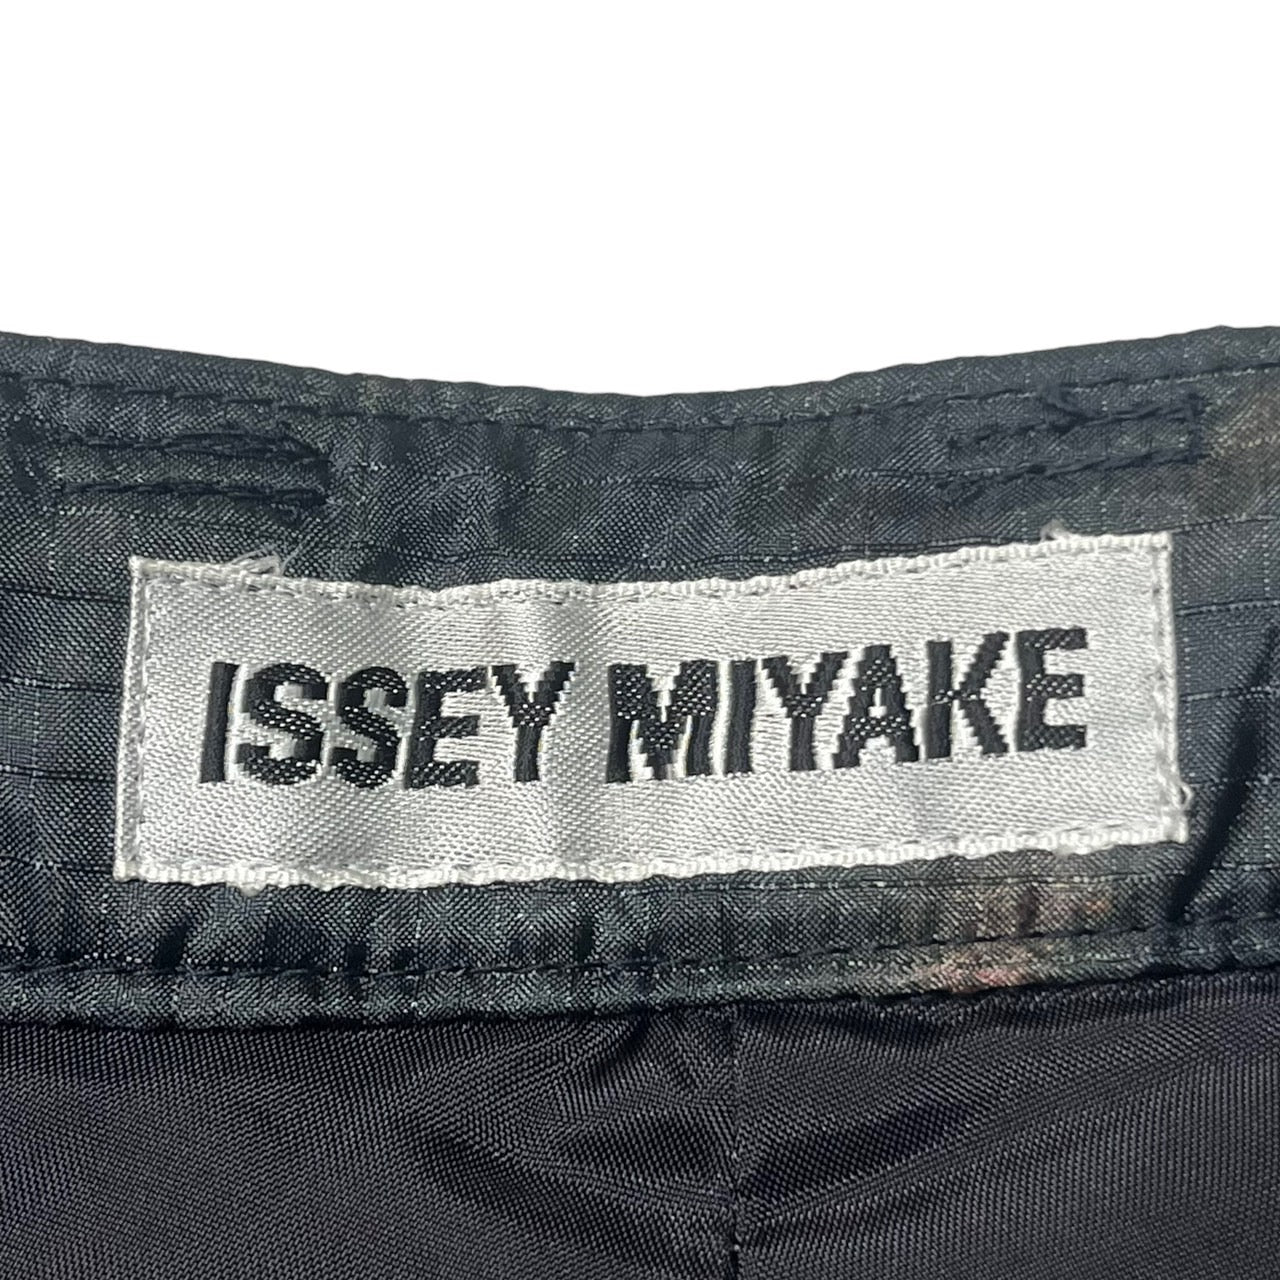 ISSEY MIYAKE(イッセイミヤケ) 98AW vintage bleached parachute pants/ヴィンテージ脱色加工パラシュートパンツ/90年代/アーカイブ/ジップ IM84-FF927 SIZE S ブラック×パープル